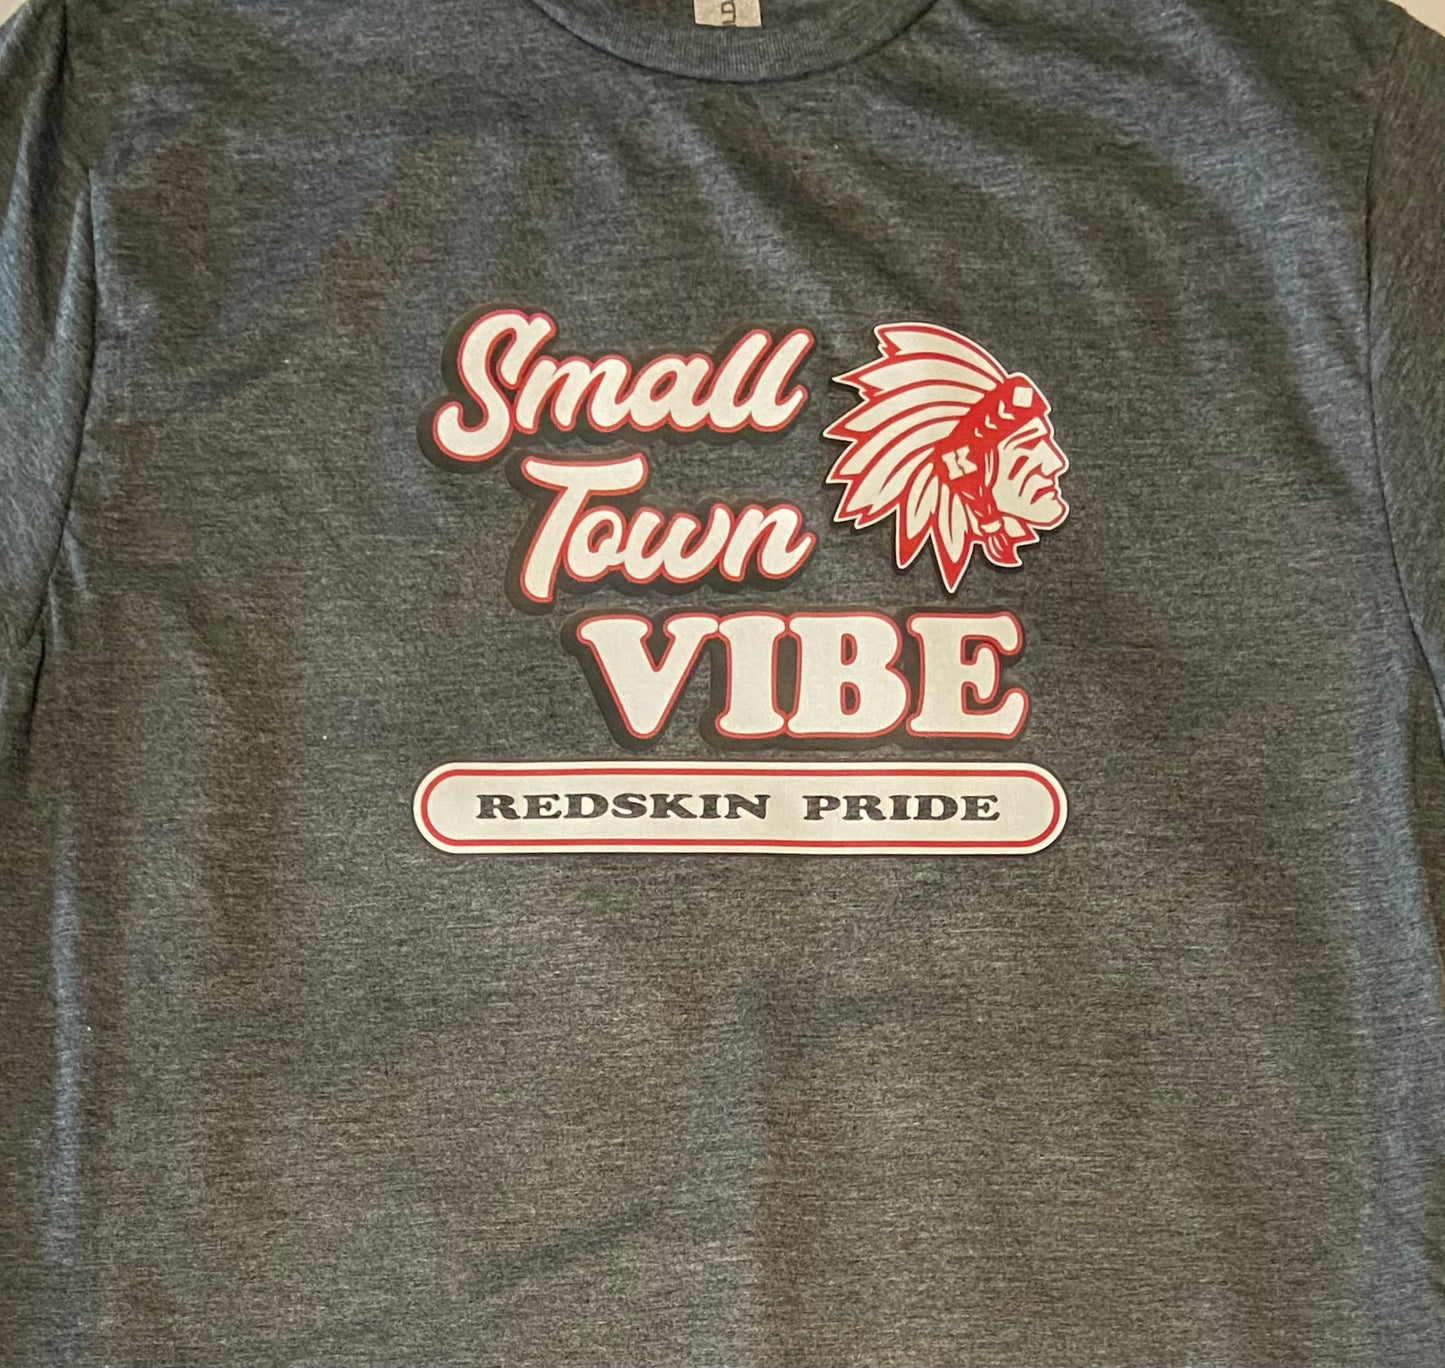 Small Town Vibe Redskin Pride - Long Sleeve T - Dark Grey - Knox Redskins